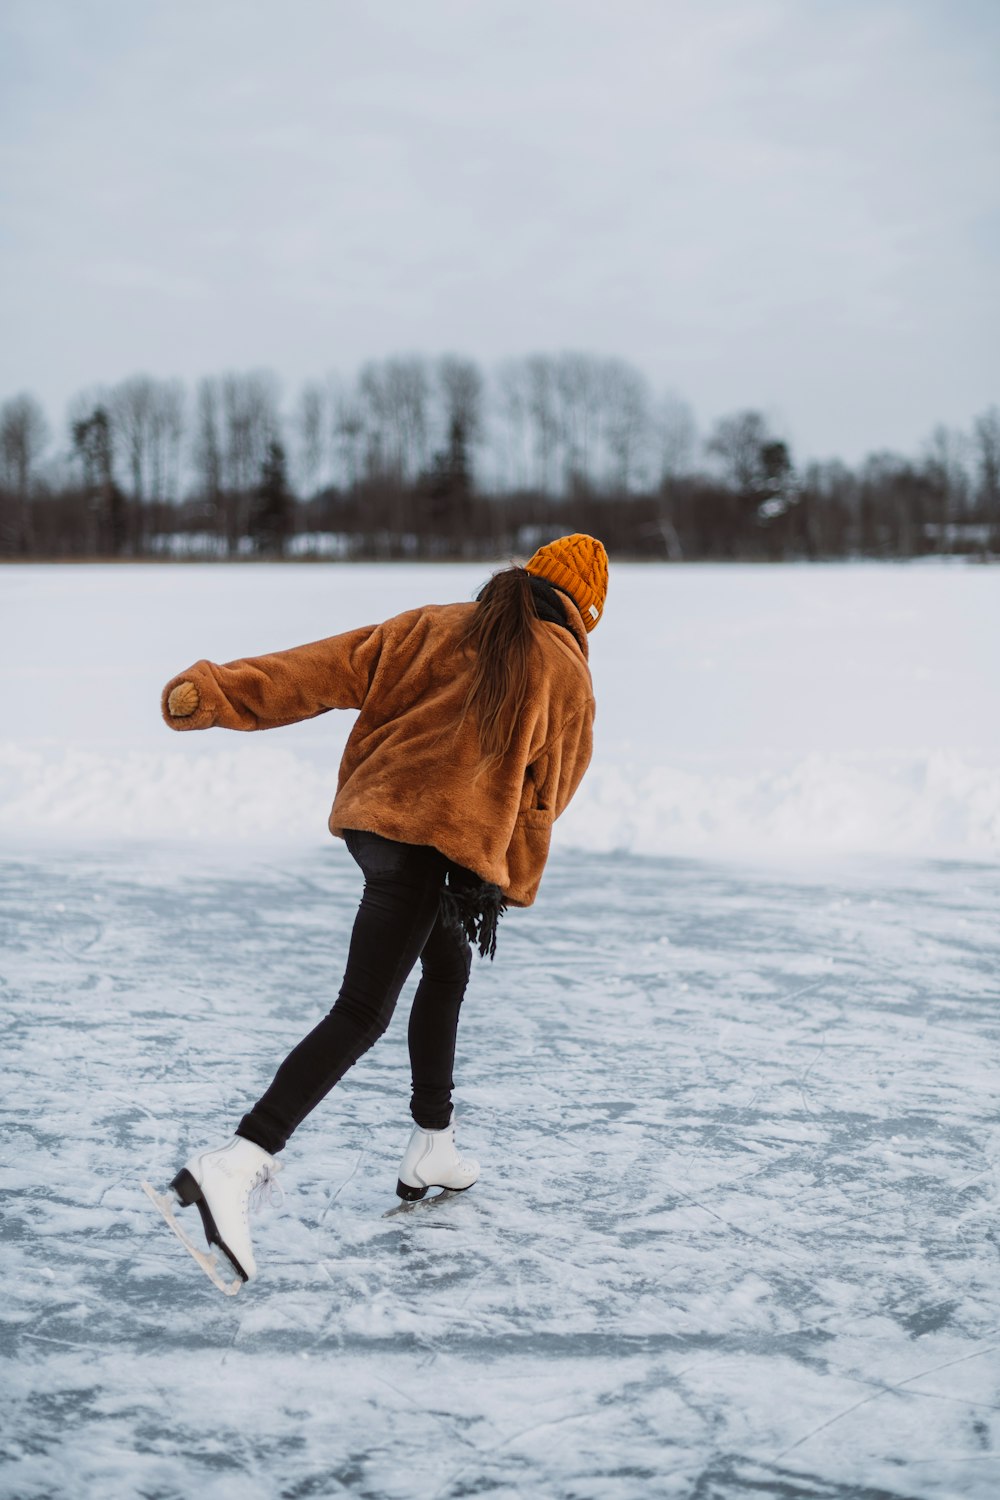 a man ice skating